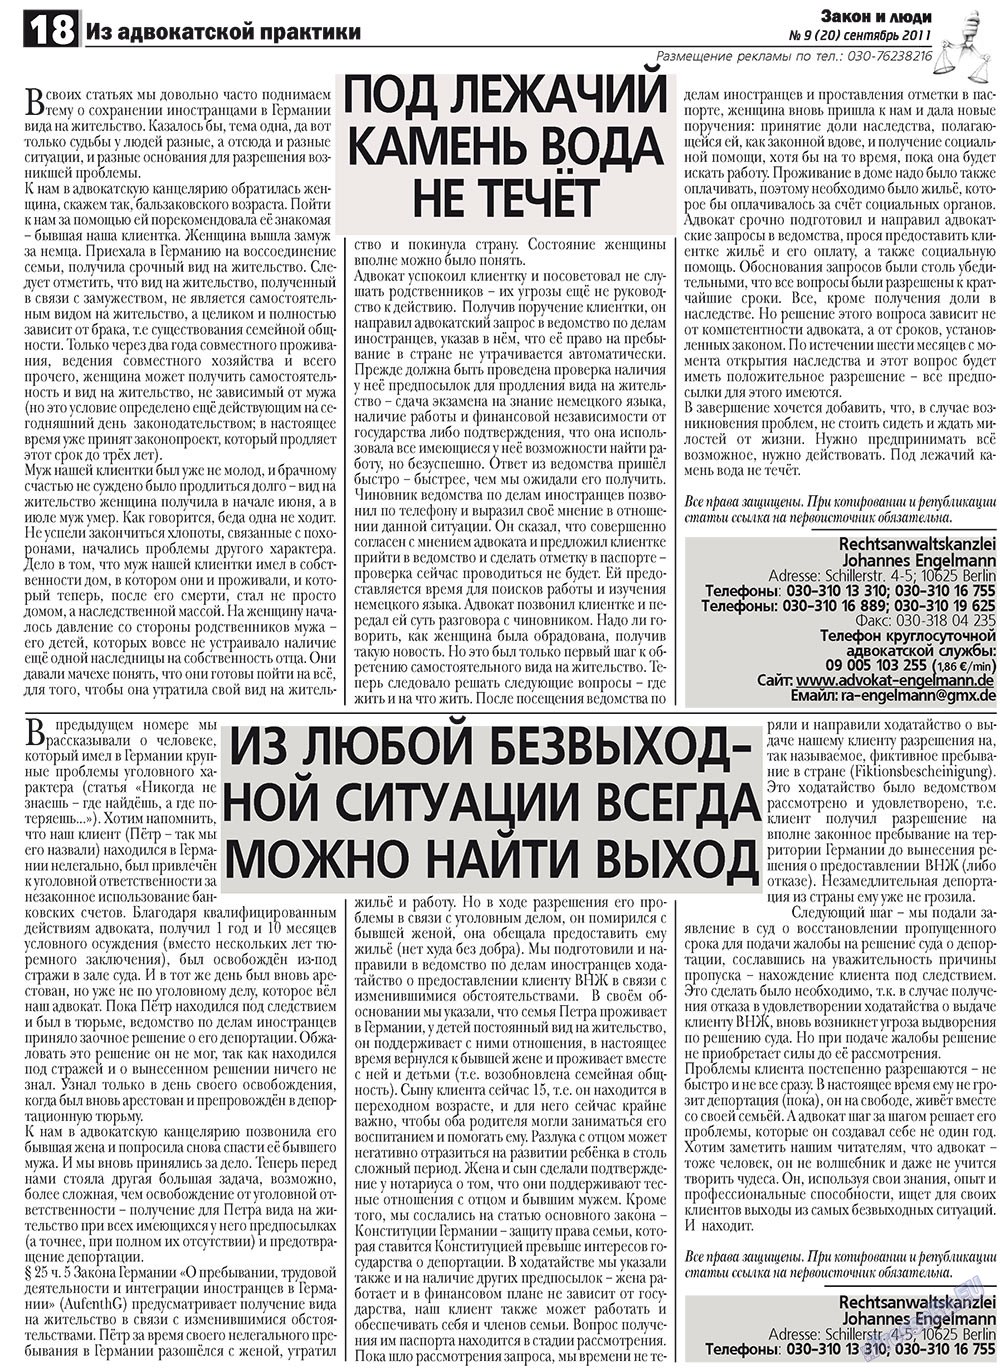 Закон и люди, газета. 2011 №9 стр.18